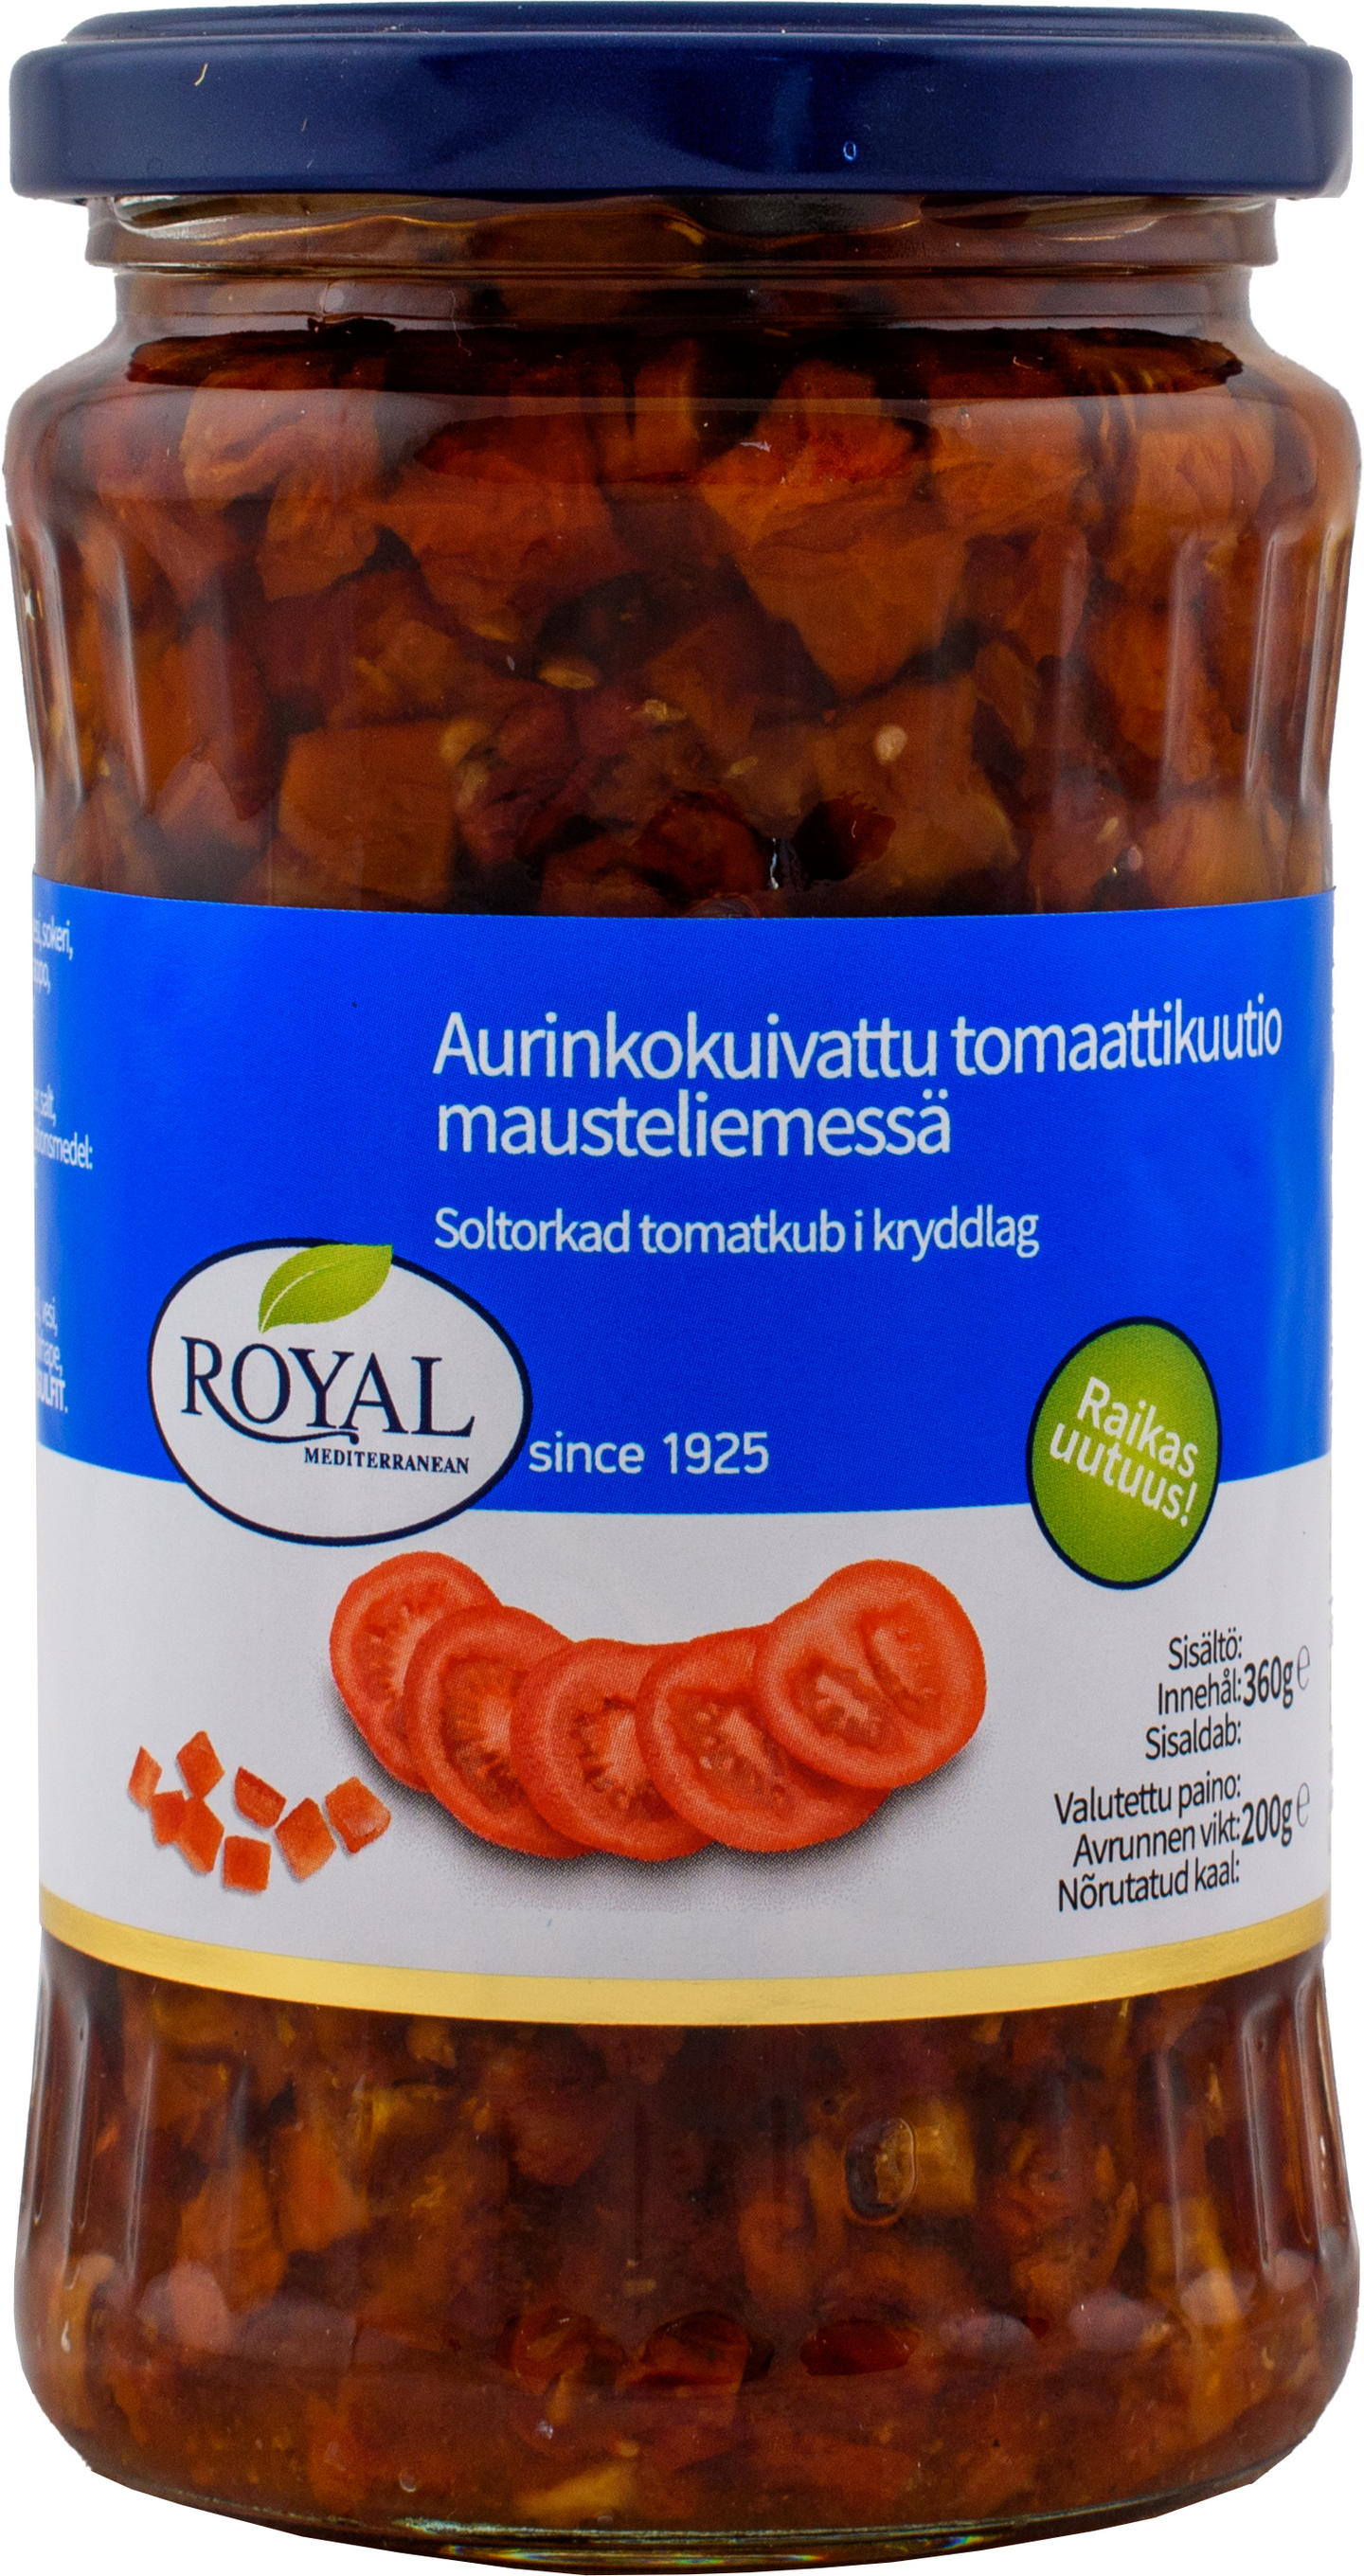 Royal aurinkokuivattu tomaattikuutio mausteliemessä 360g/200g